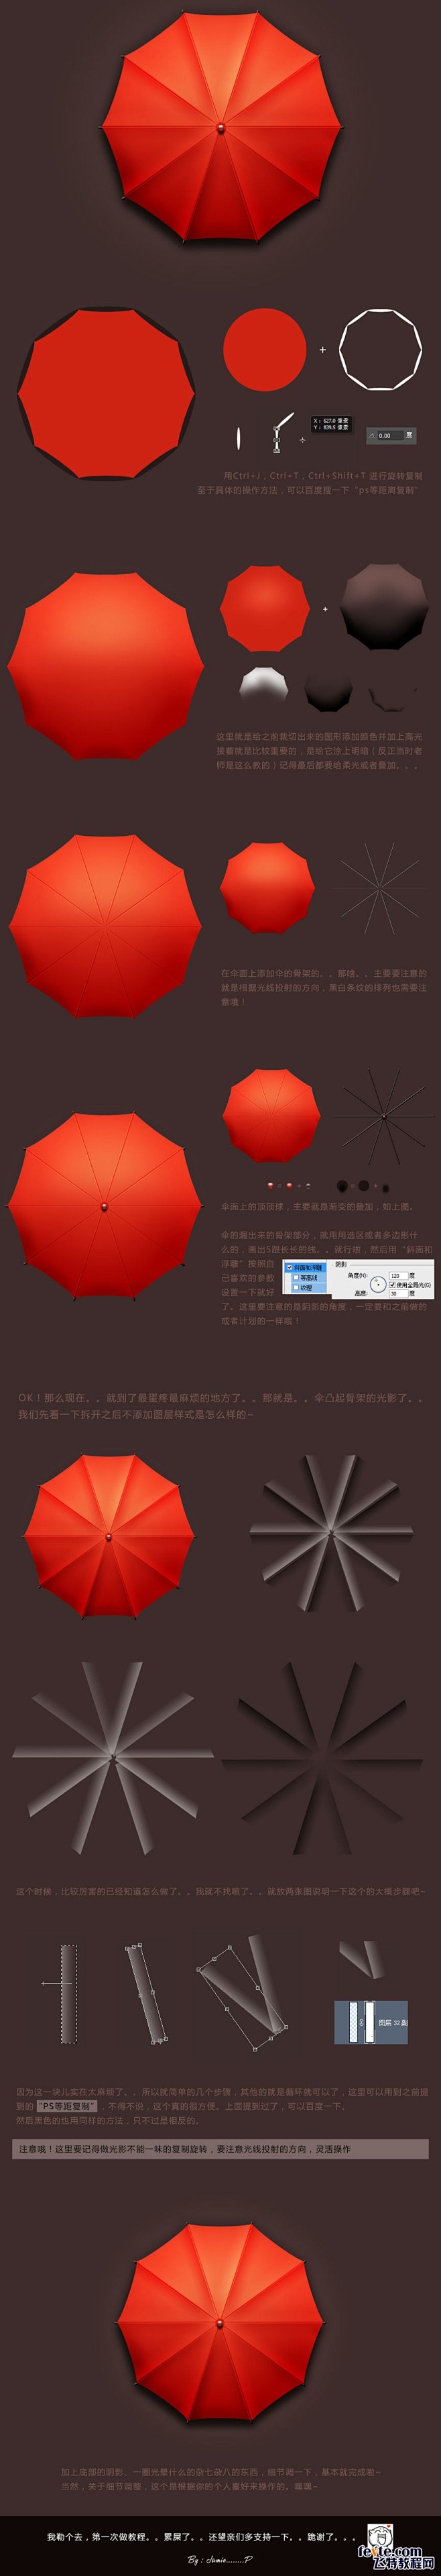 PS打造红伞UI图标 - 鼠绘教程 - ...